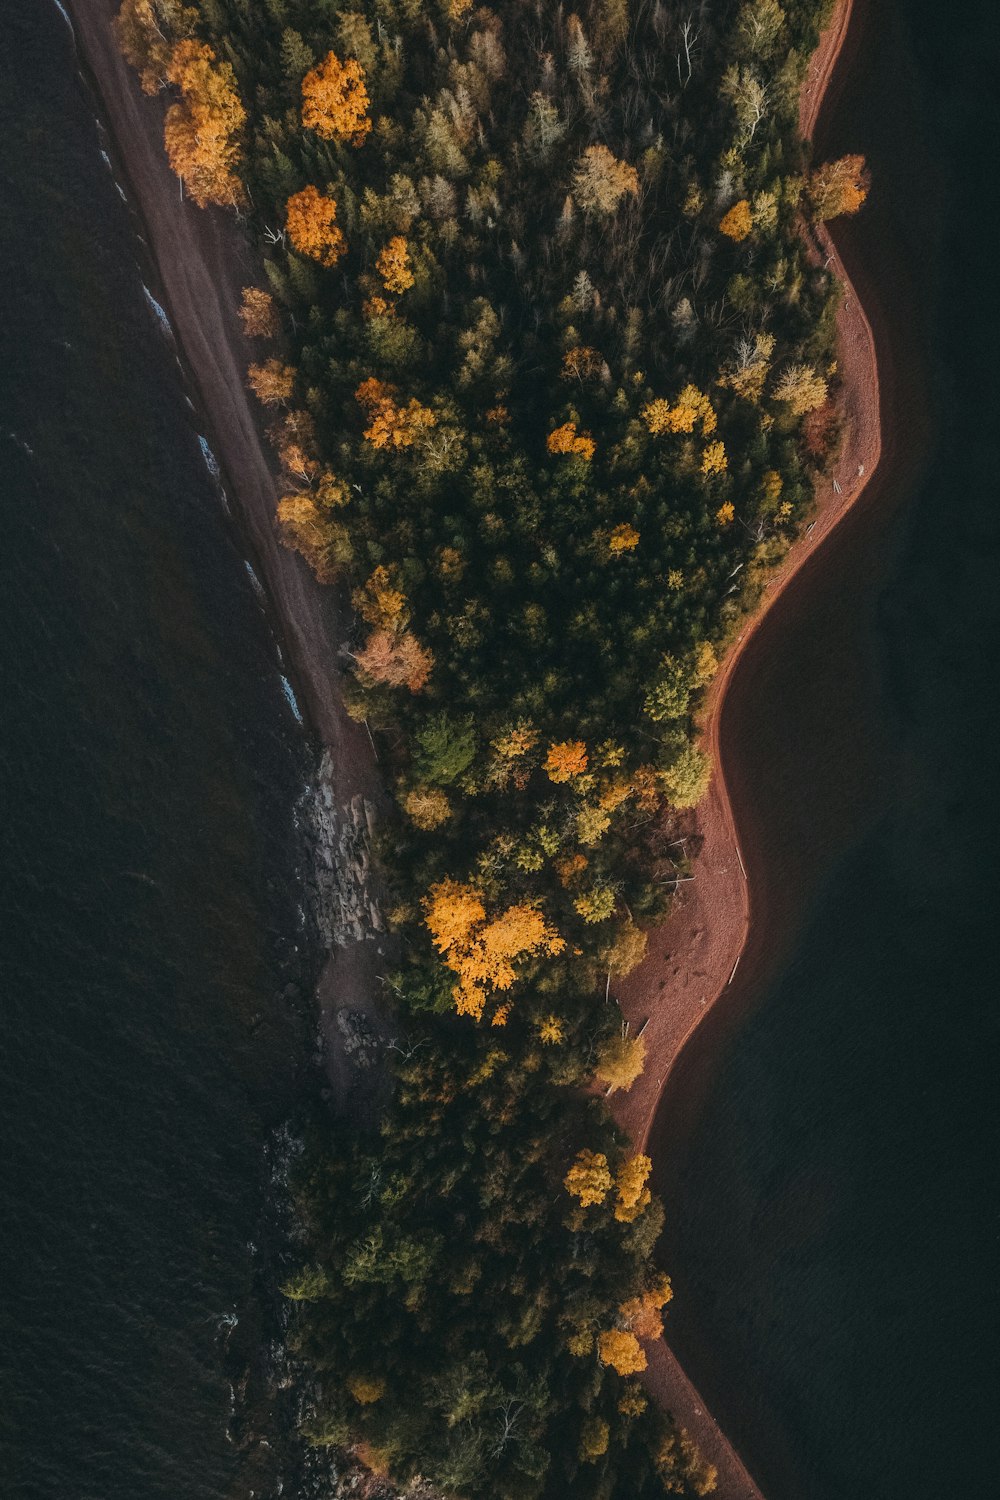 uma vista aérea de um corpo de água cercado por árvores